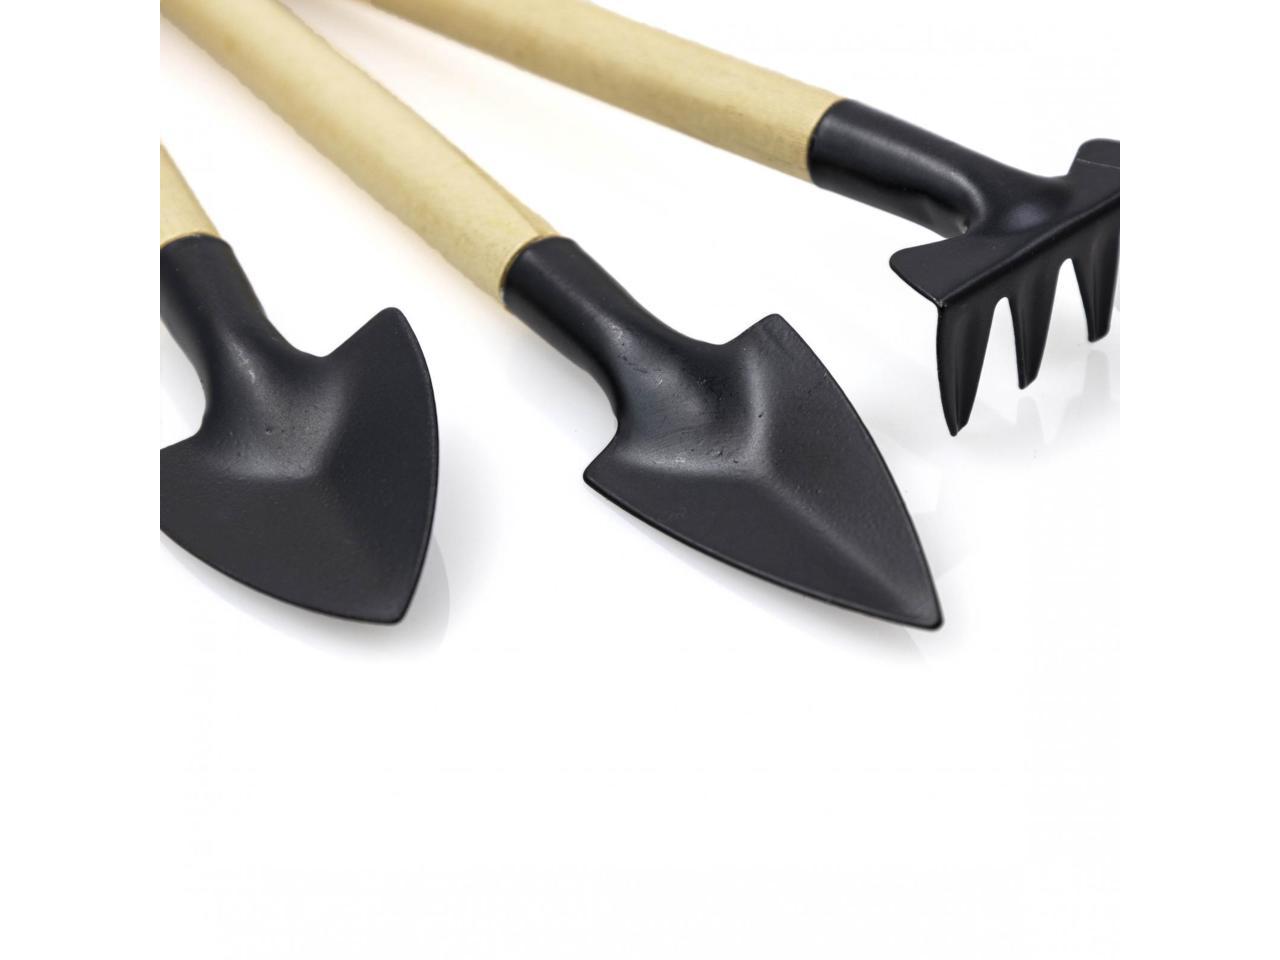 Universal Tool Mini Wooden Handheld Gardening Tool Set Spade Shovel Rake 3 Piece